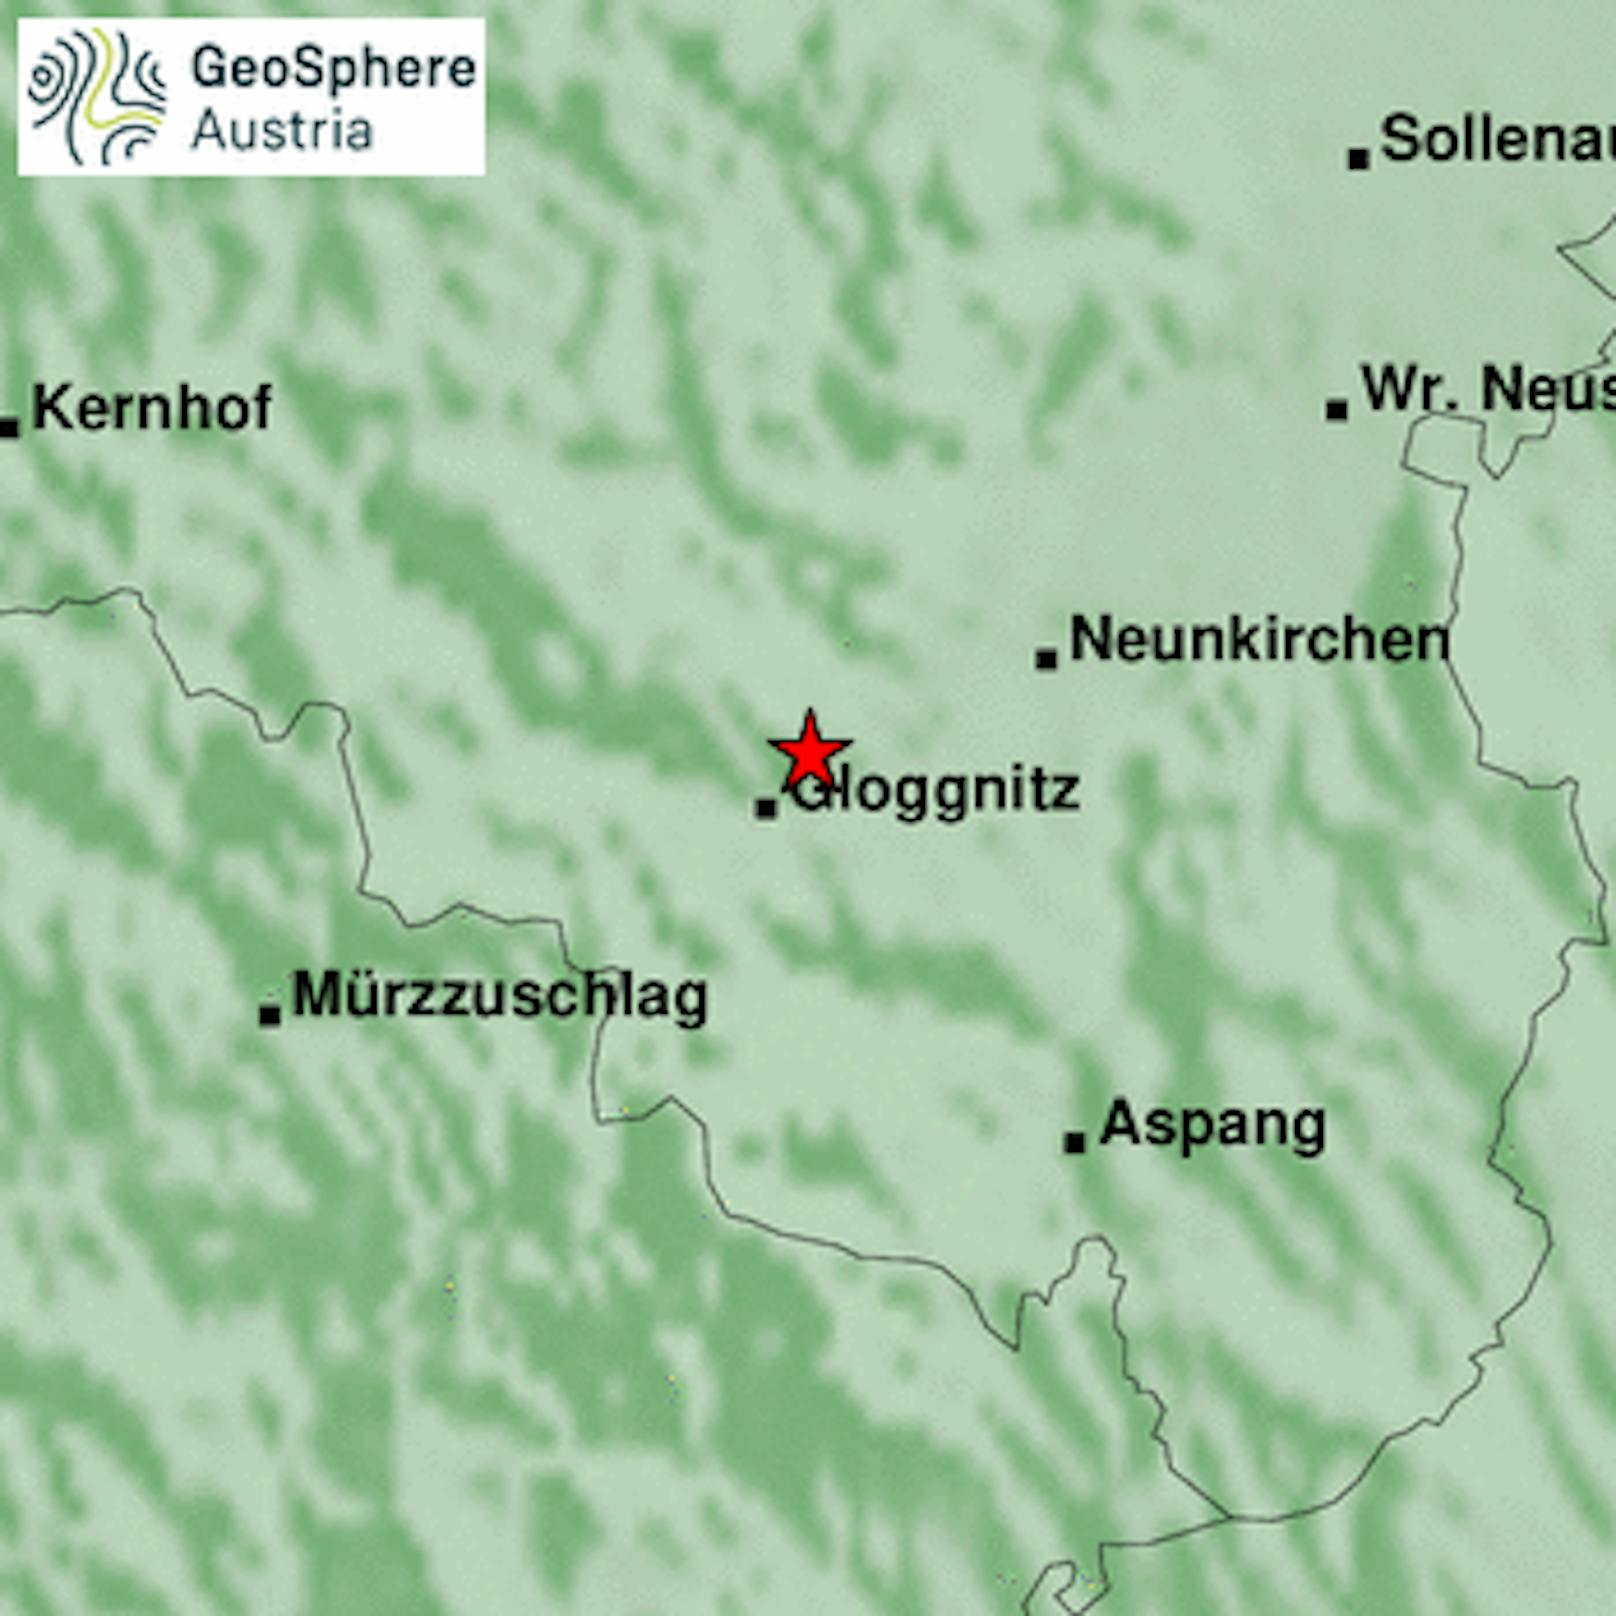 Am Montag, den 29. Mai 2023, ereignete sich nachts um 02:23 Uhr in Niederösterreich im Raum Gloggnitz ein Erdbeben der Magnitude 3.